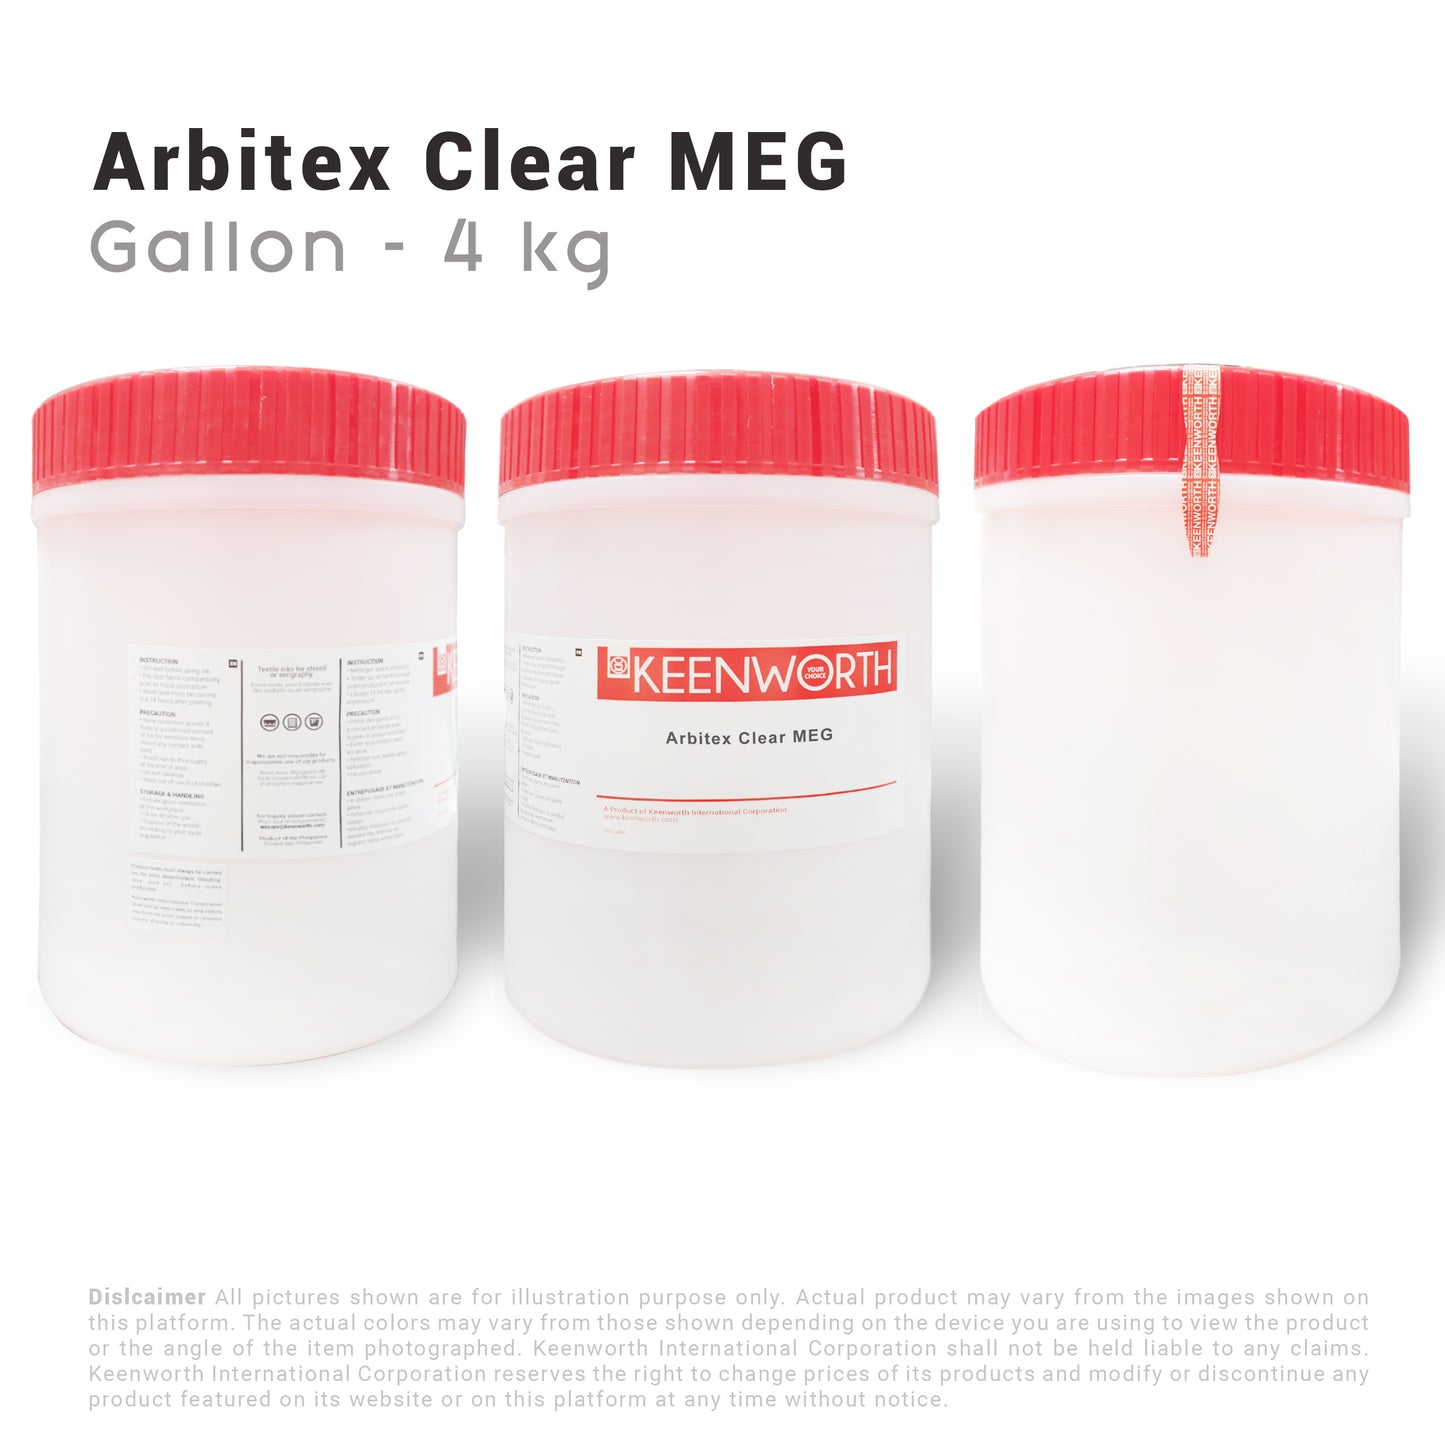 Arbitex Clear MEG